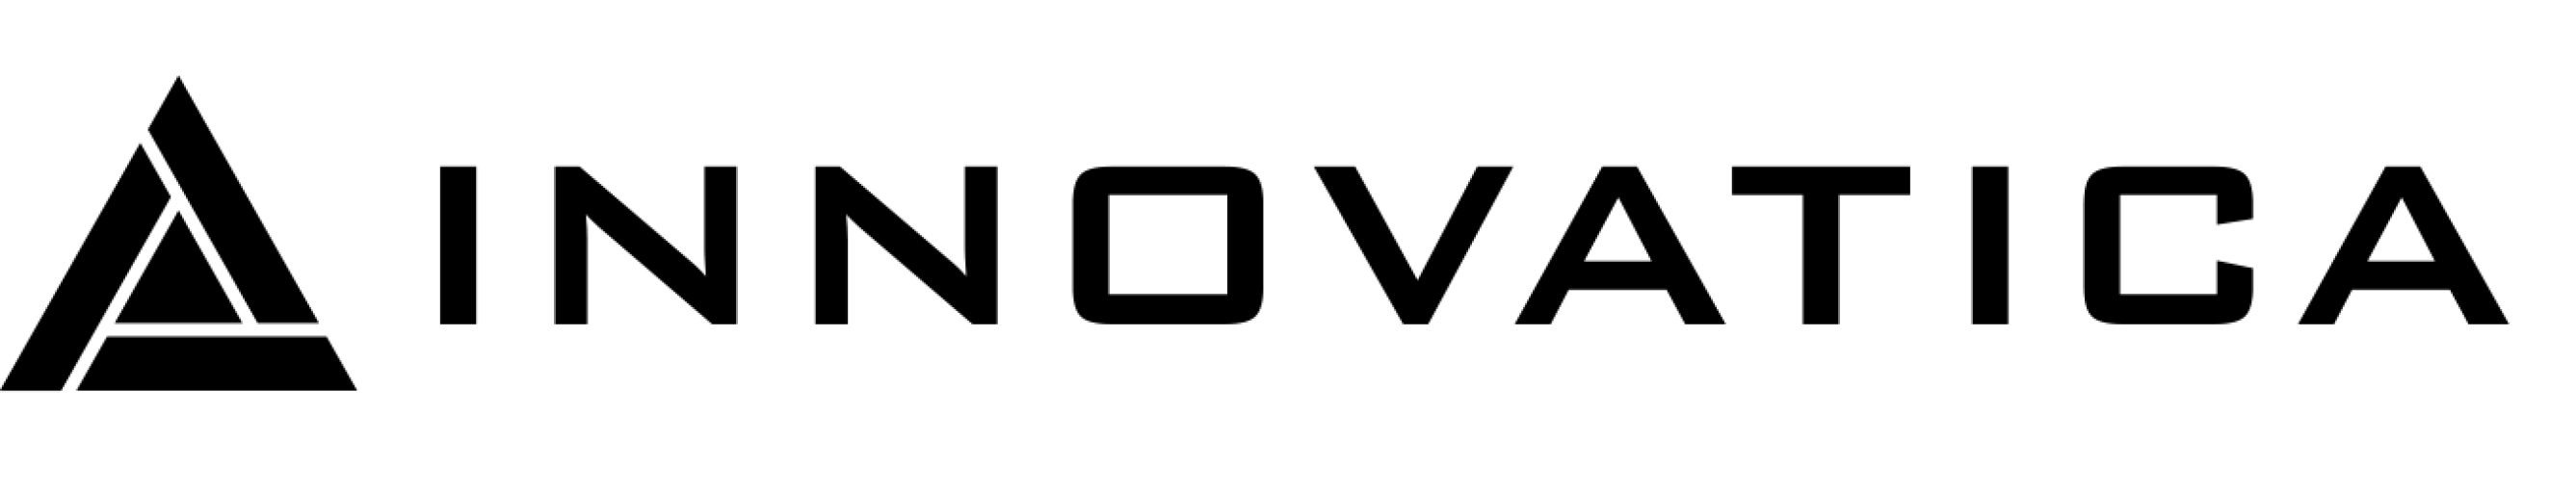 logo firmy Innovatica.